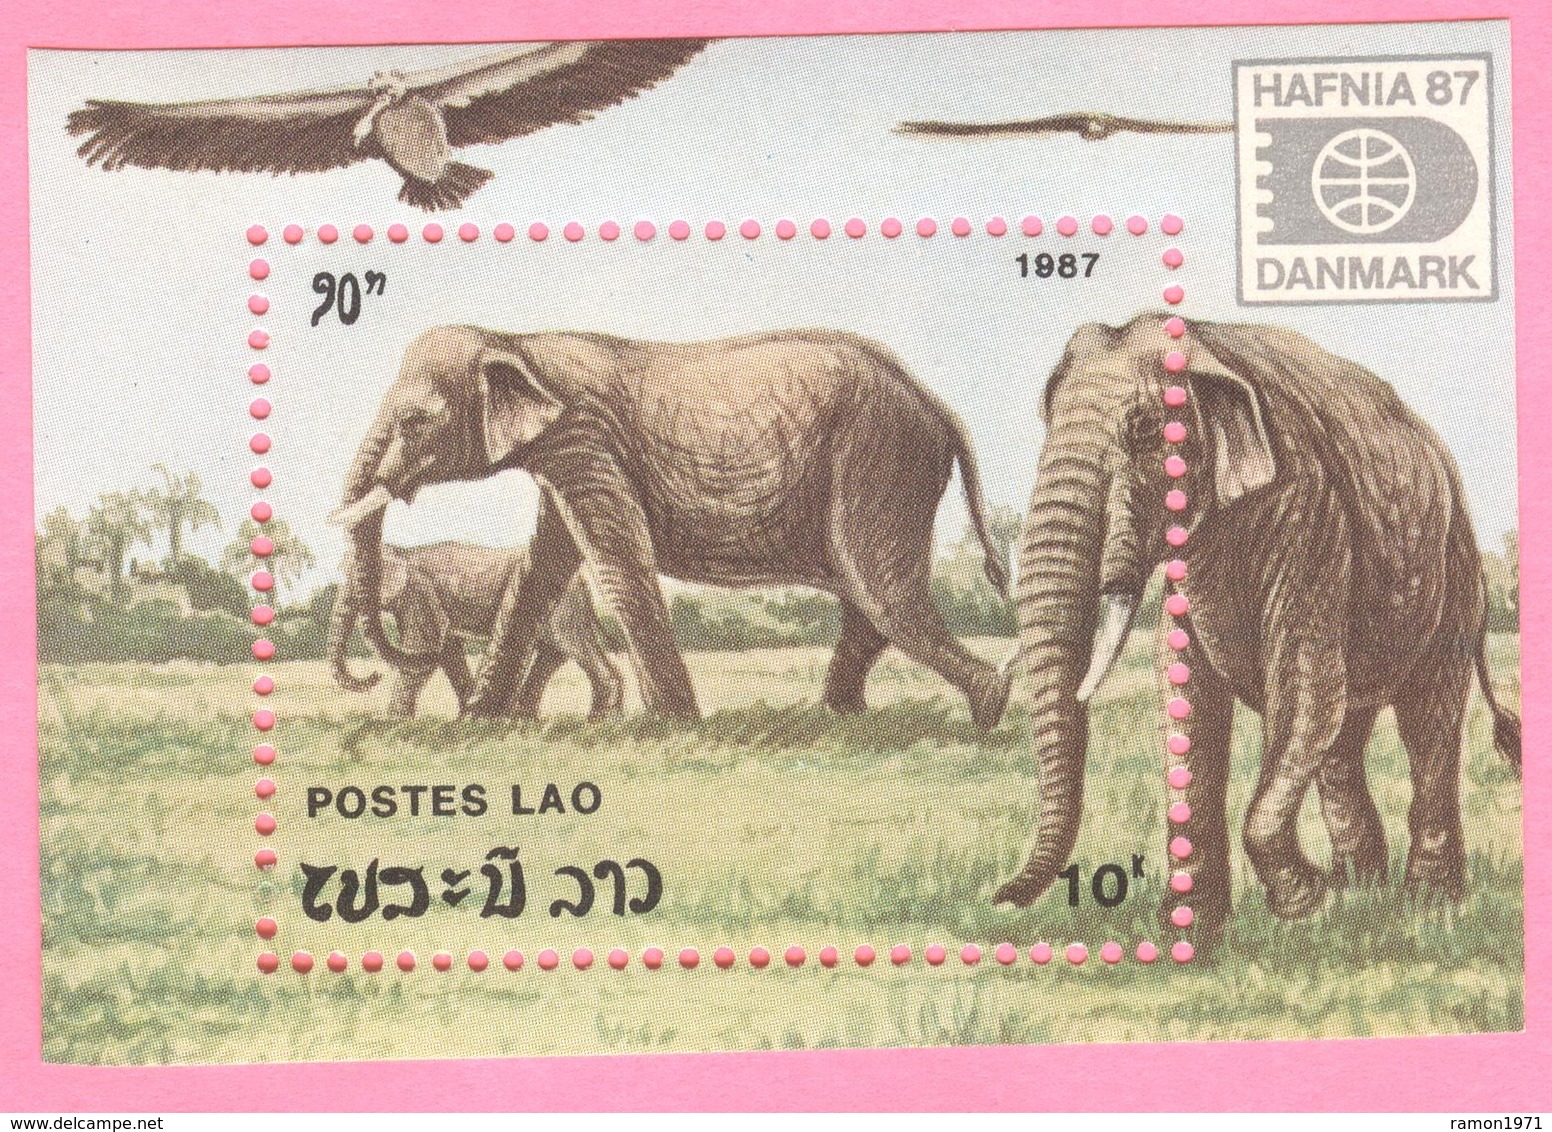 Laos - Block Of Stamps - INTERNATIONAL PHILATELIC EXHIBITION. HAFNIA - DANMARK - 1987 UNC - Laos